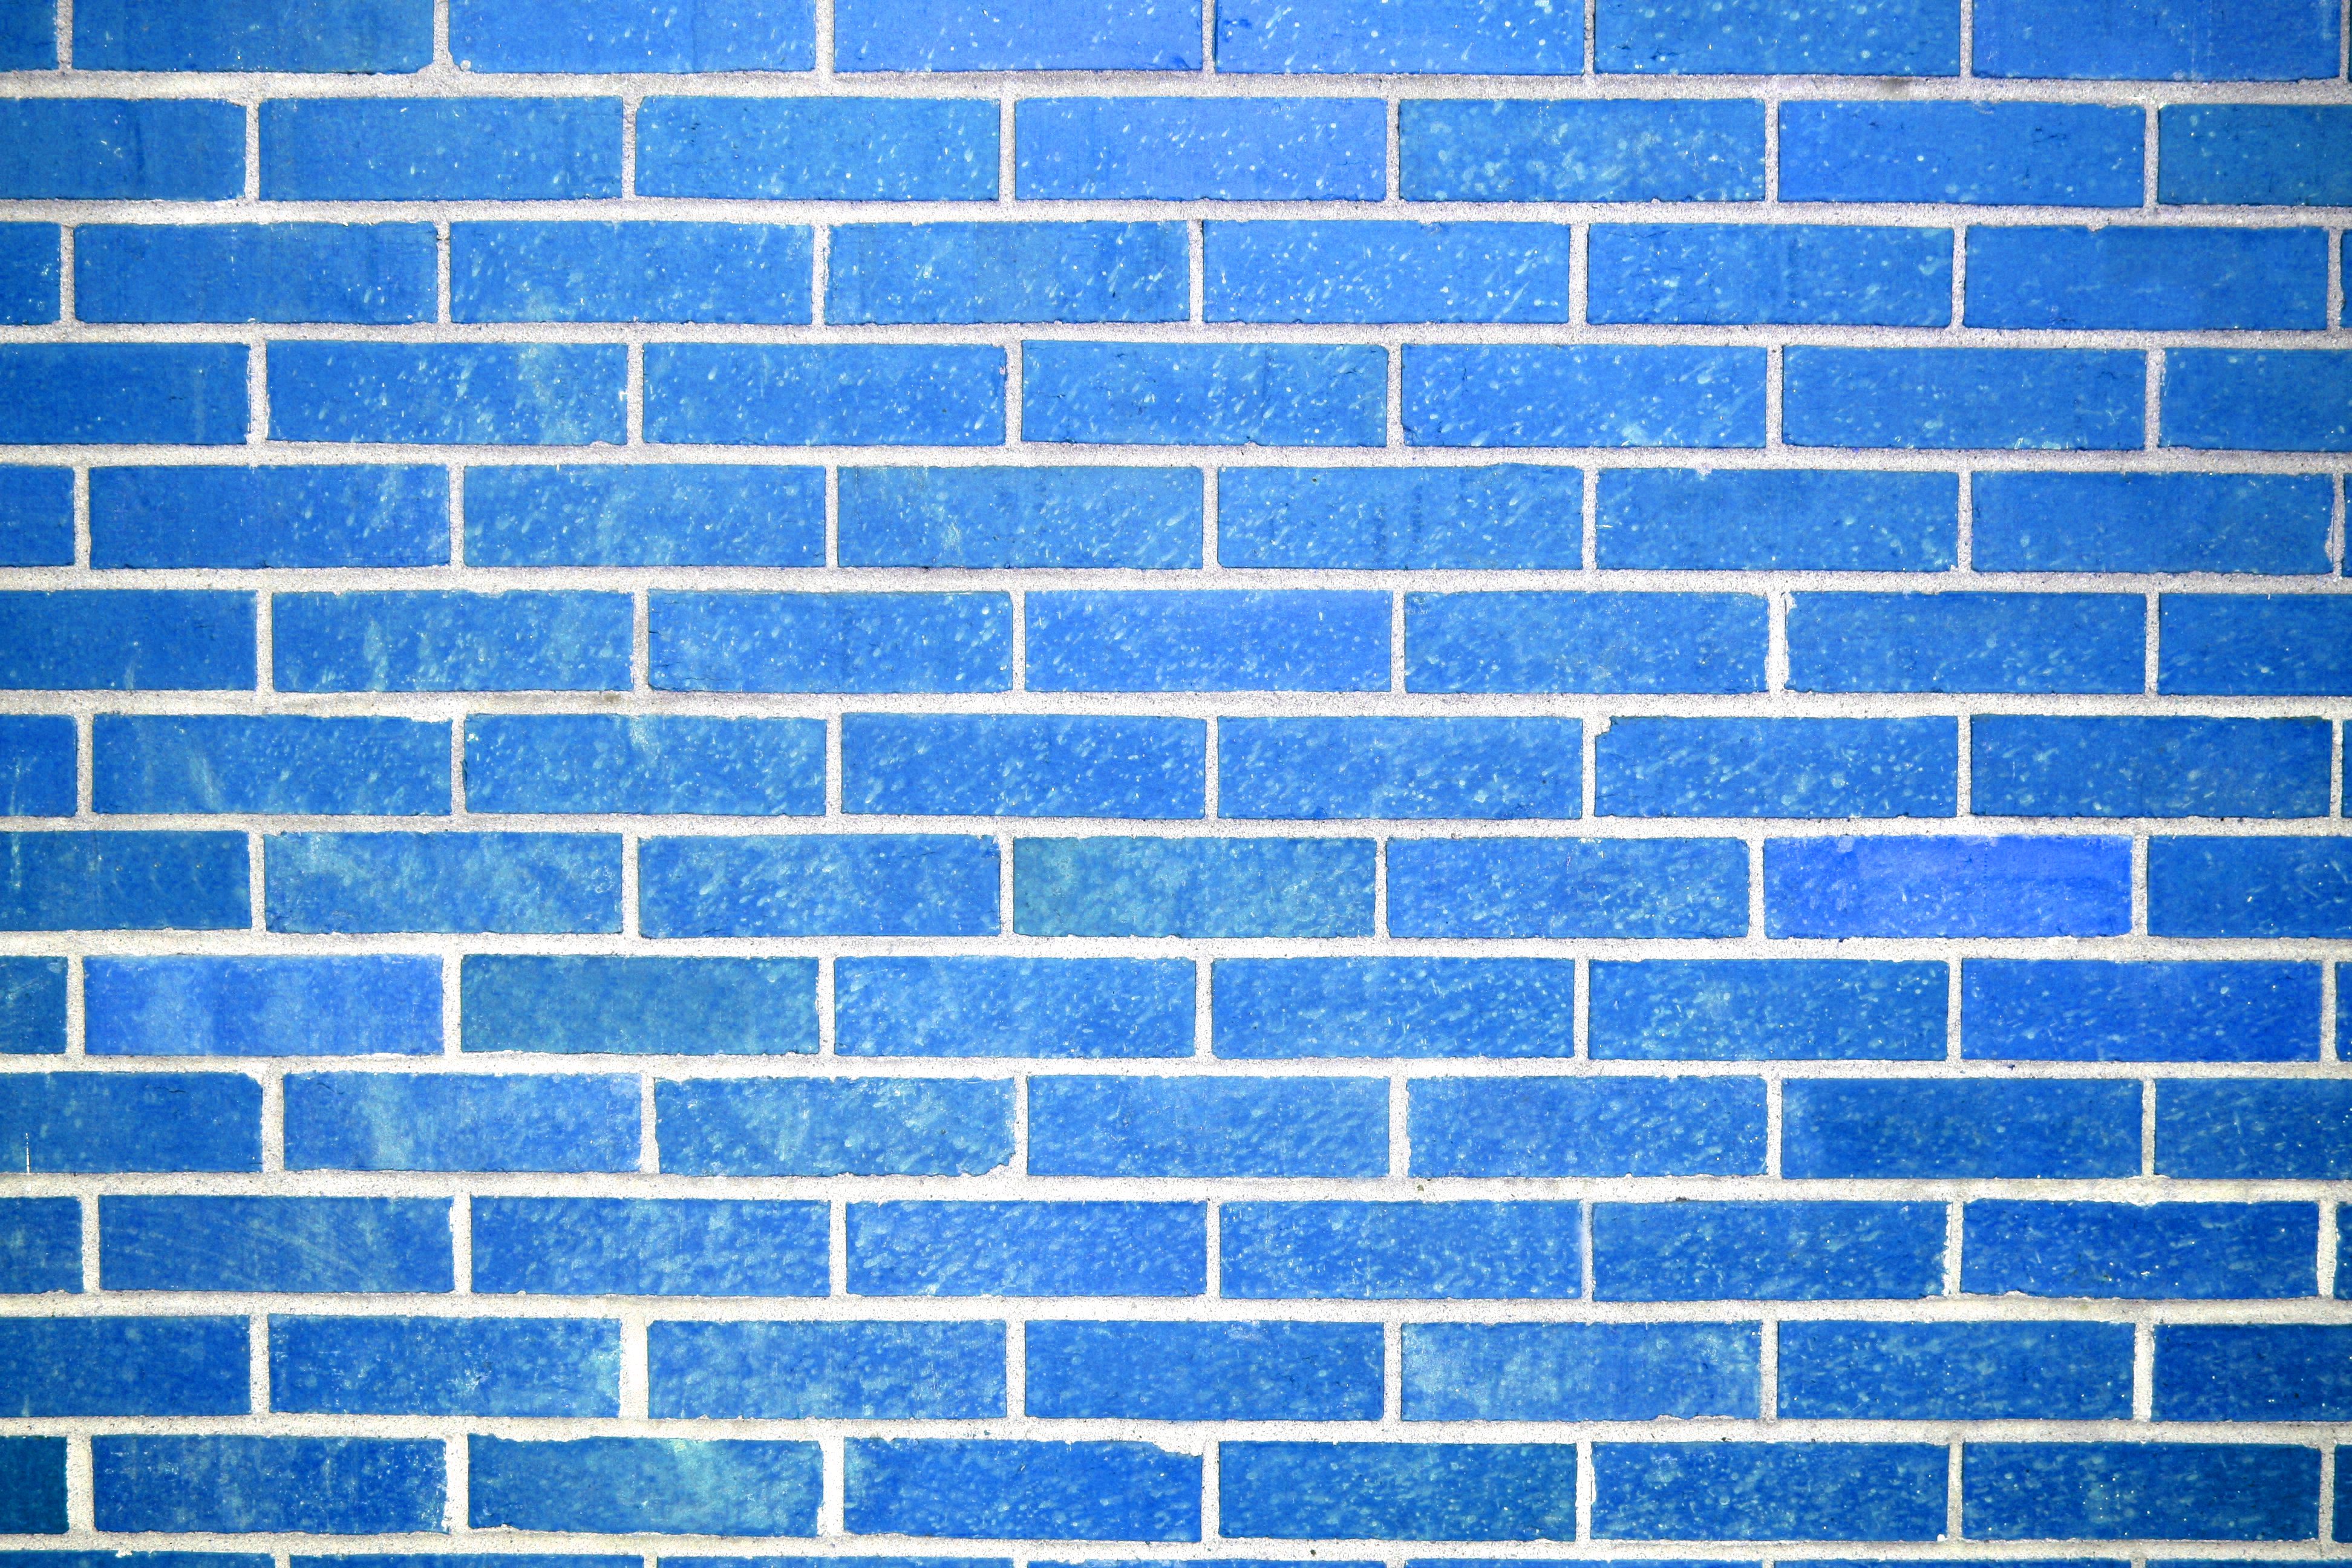 45+] Blue Brick Wallpaper - WallpaperSafari